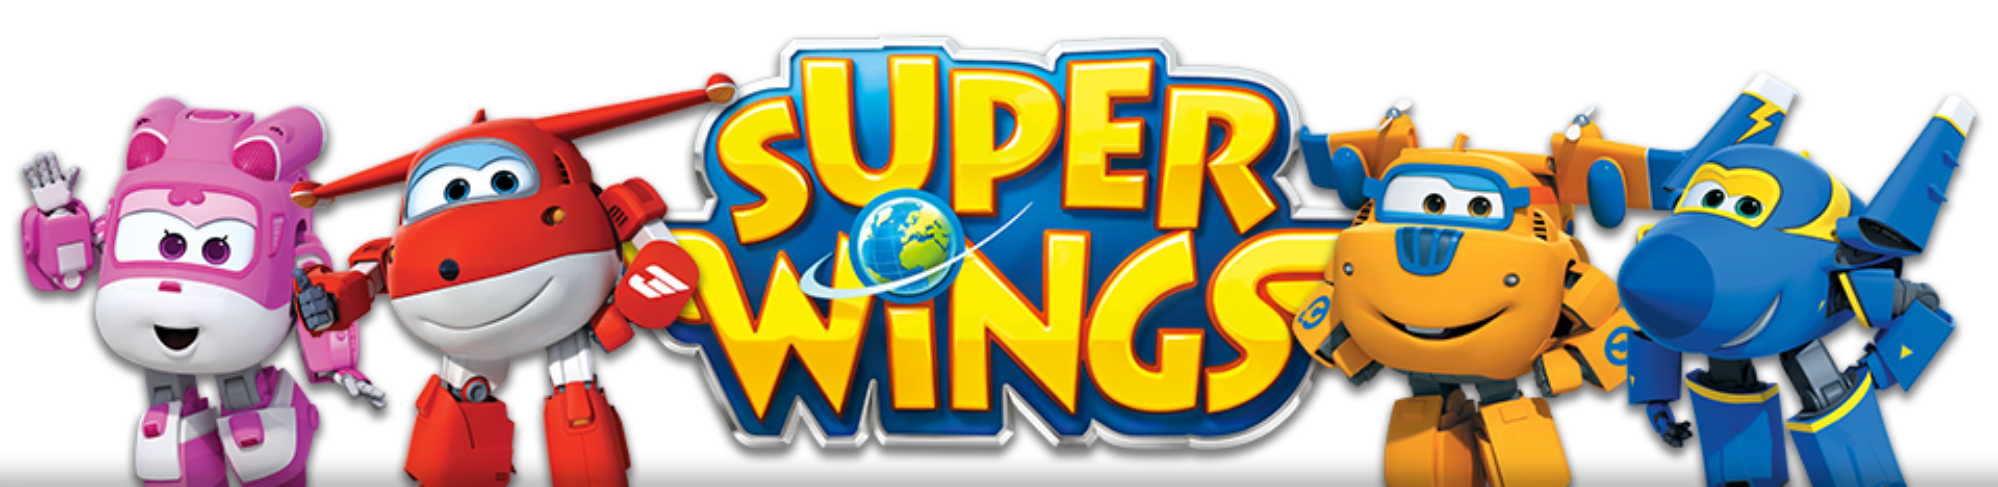 Logo Super Wings Png Imagens E Moldes Super Wings Auldey Vroom N ...